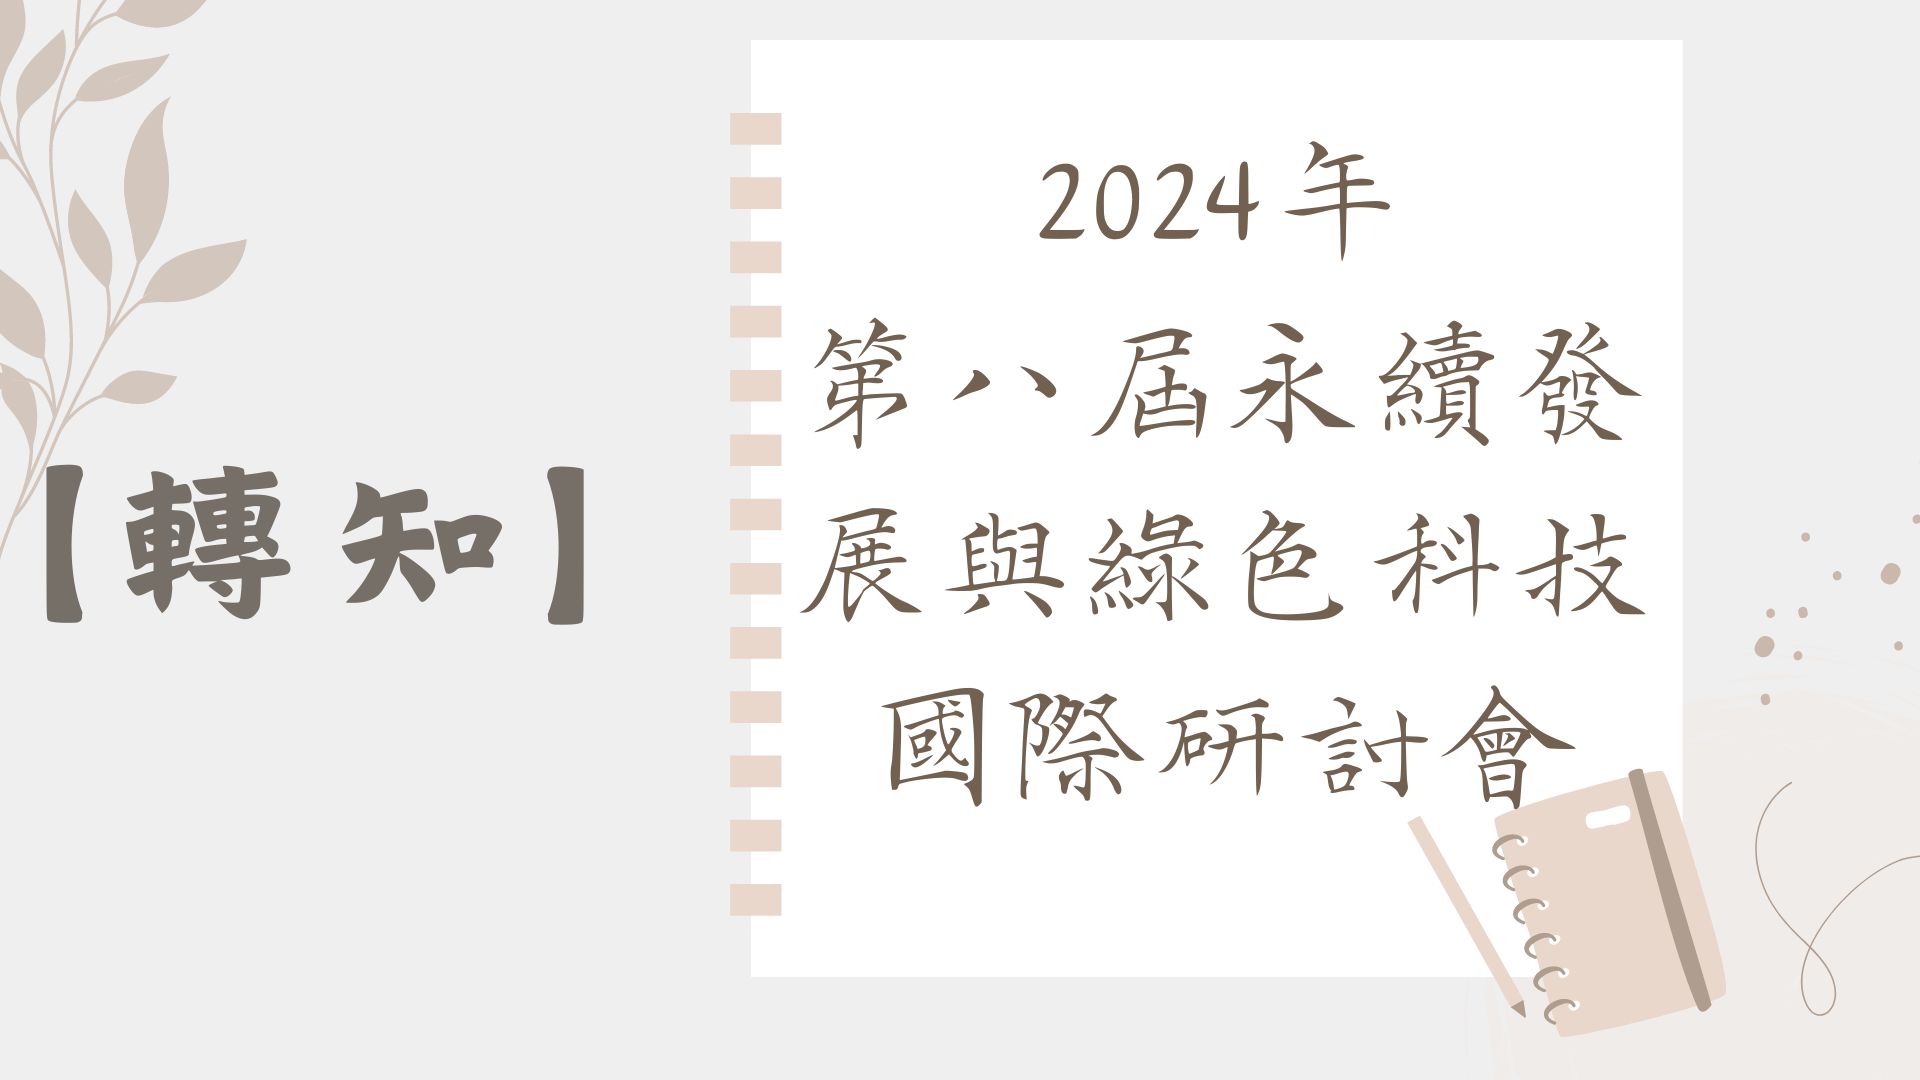 【轉知】2024年 第八屆永續發展與綠色科技國際研討會